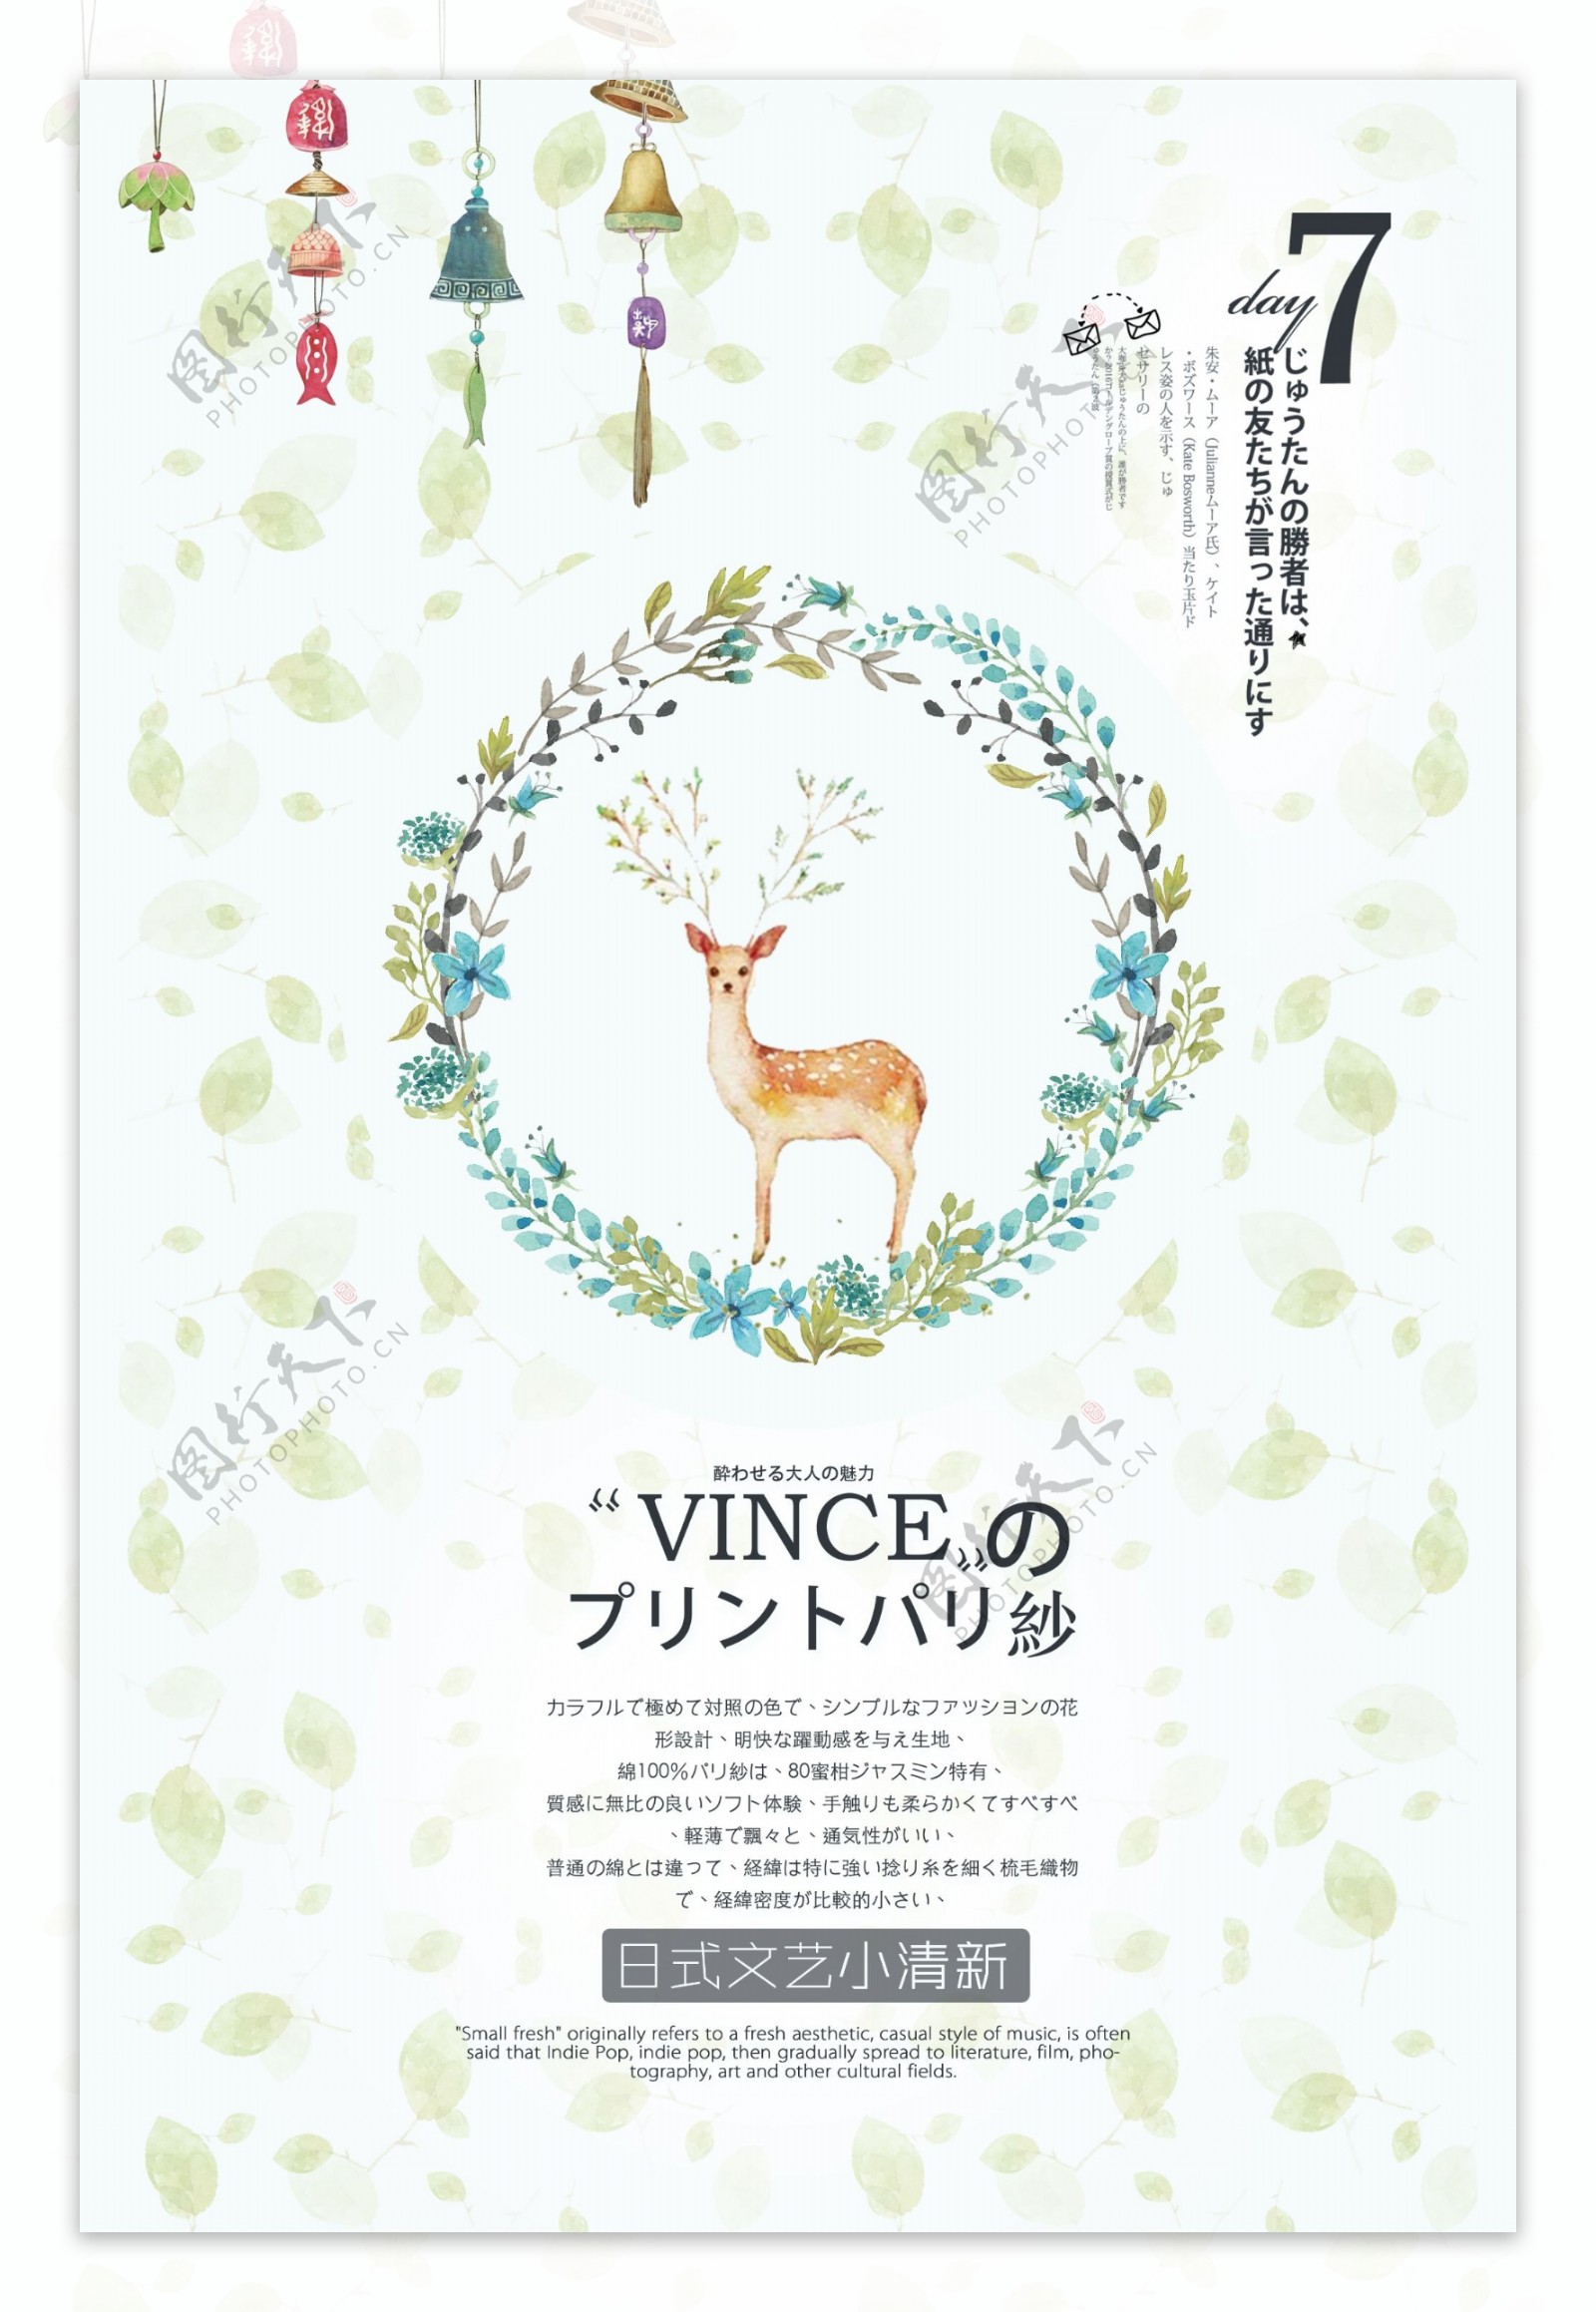 日本清新风格圣诞活动国外创意海报